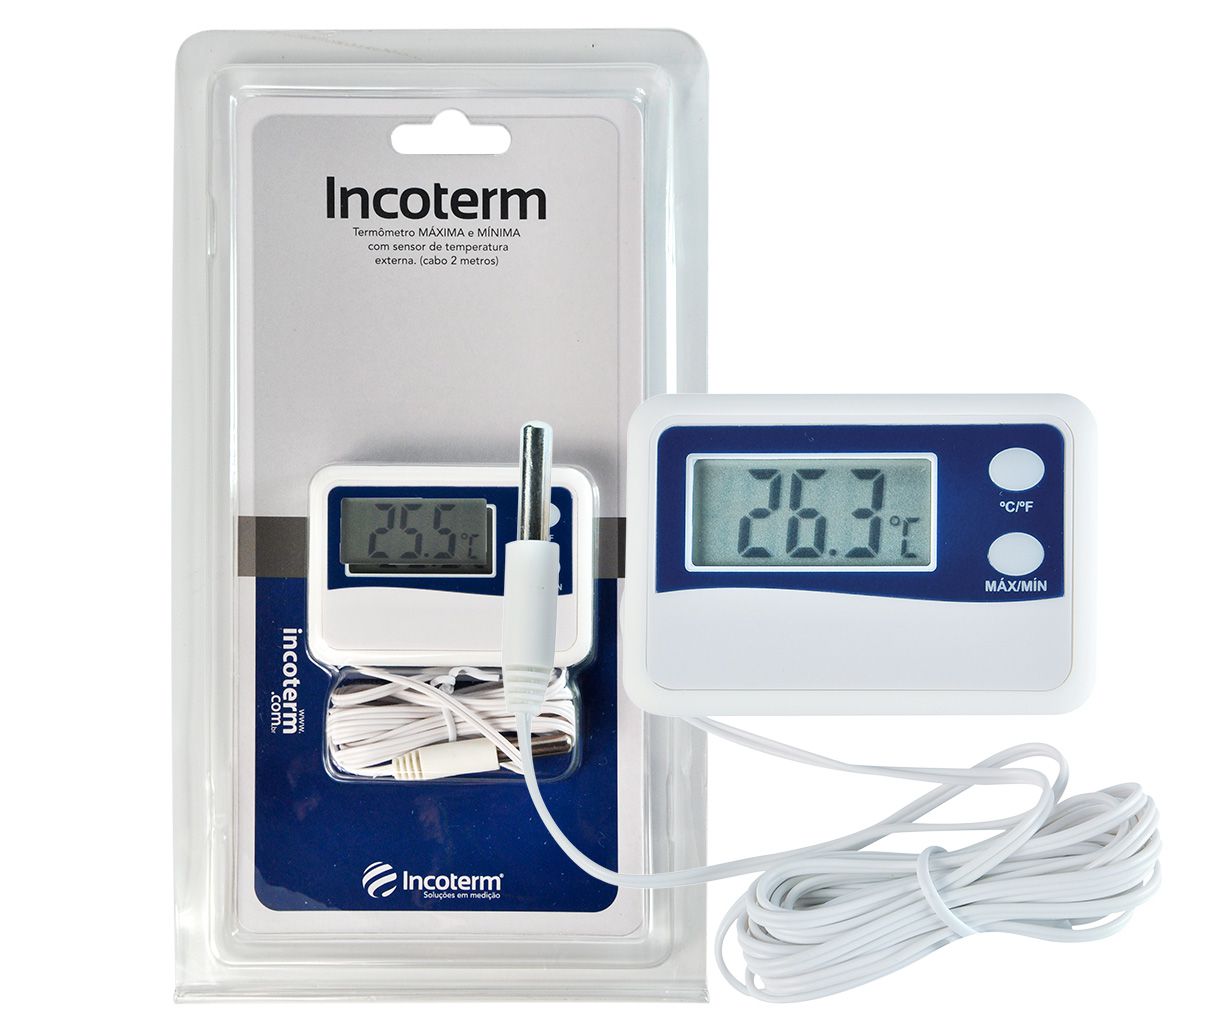 Termômetro Digital Máxima e Mínima Incoterm - Cabo 50 cm 7424.02.1.00 -  Termoland soluções em medição, equipamentos e insumos laboratórios ,  médicos e hospitalar.